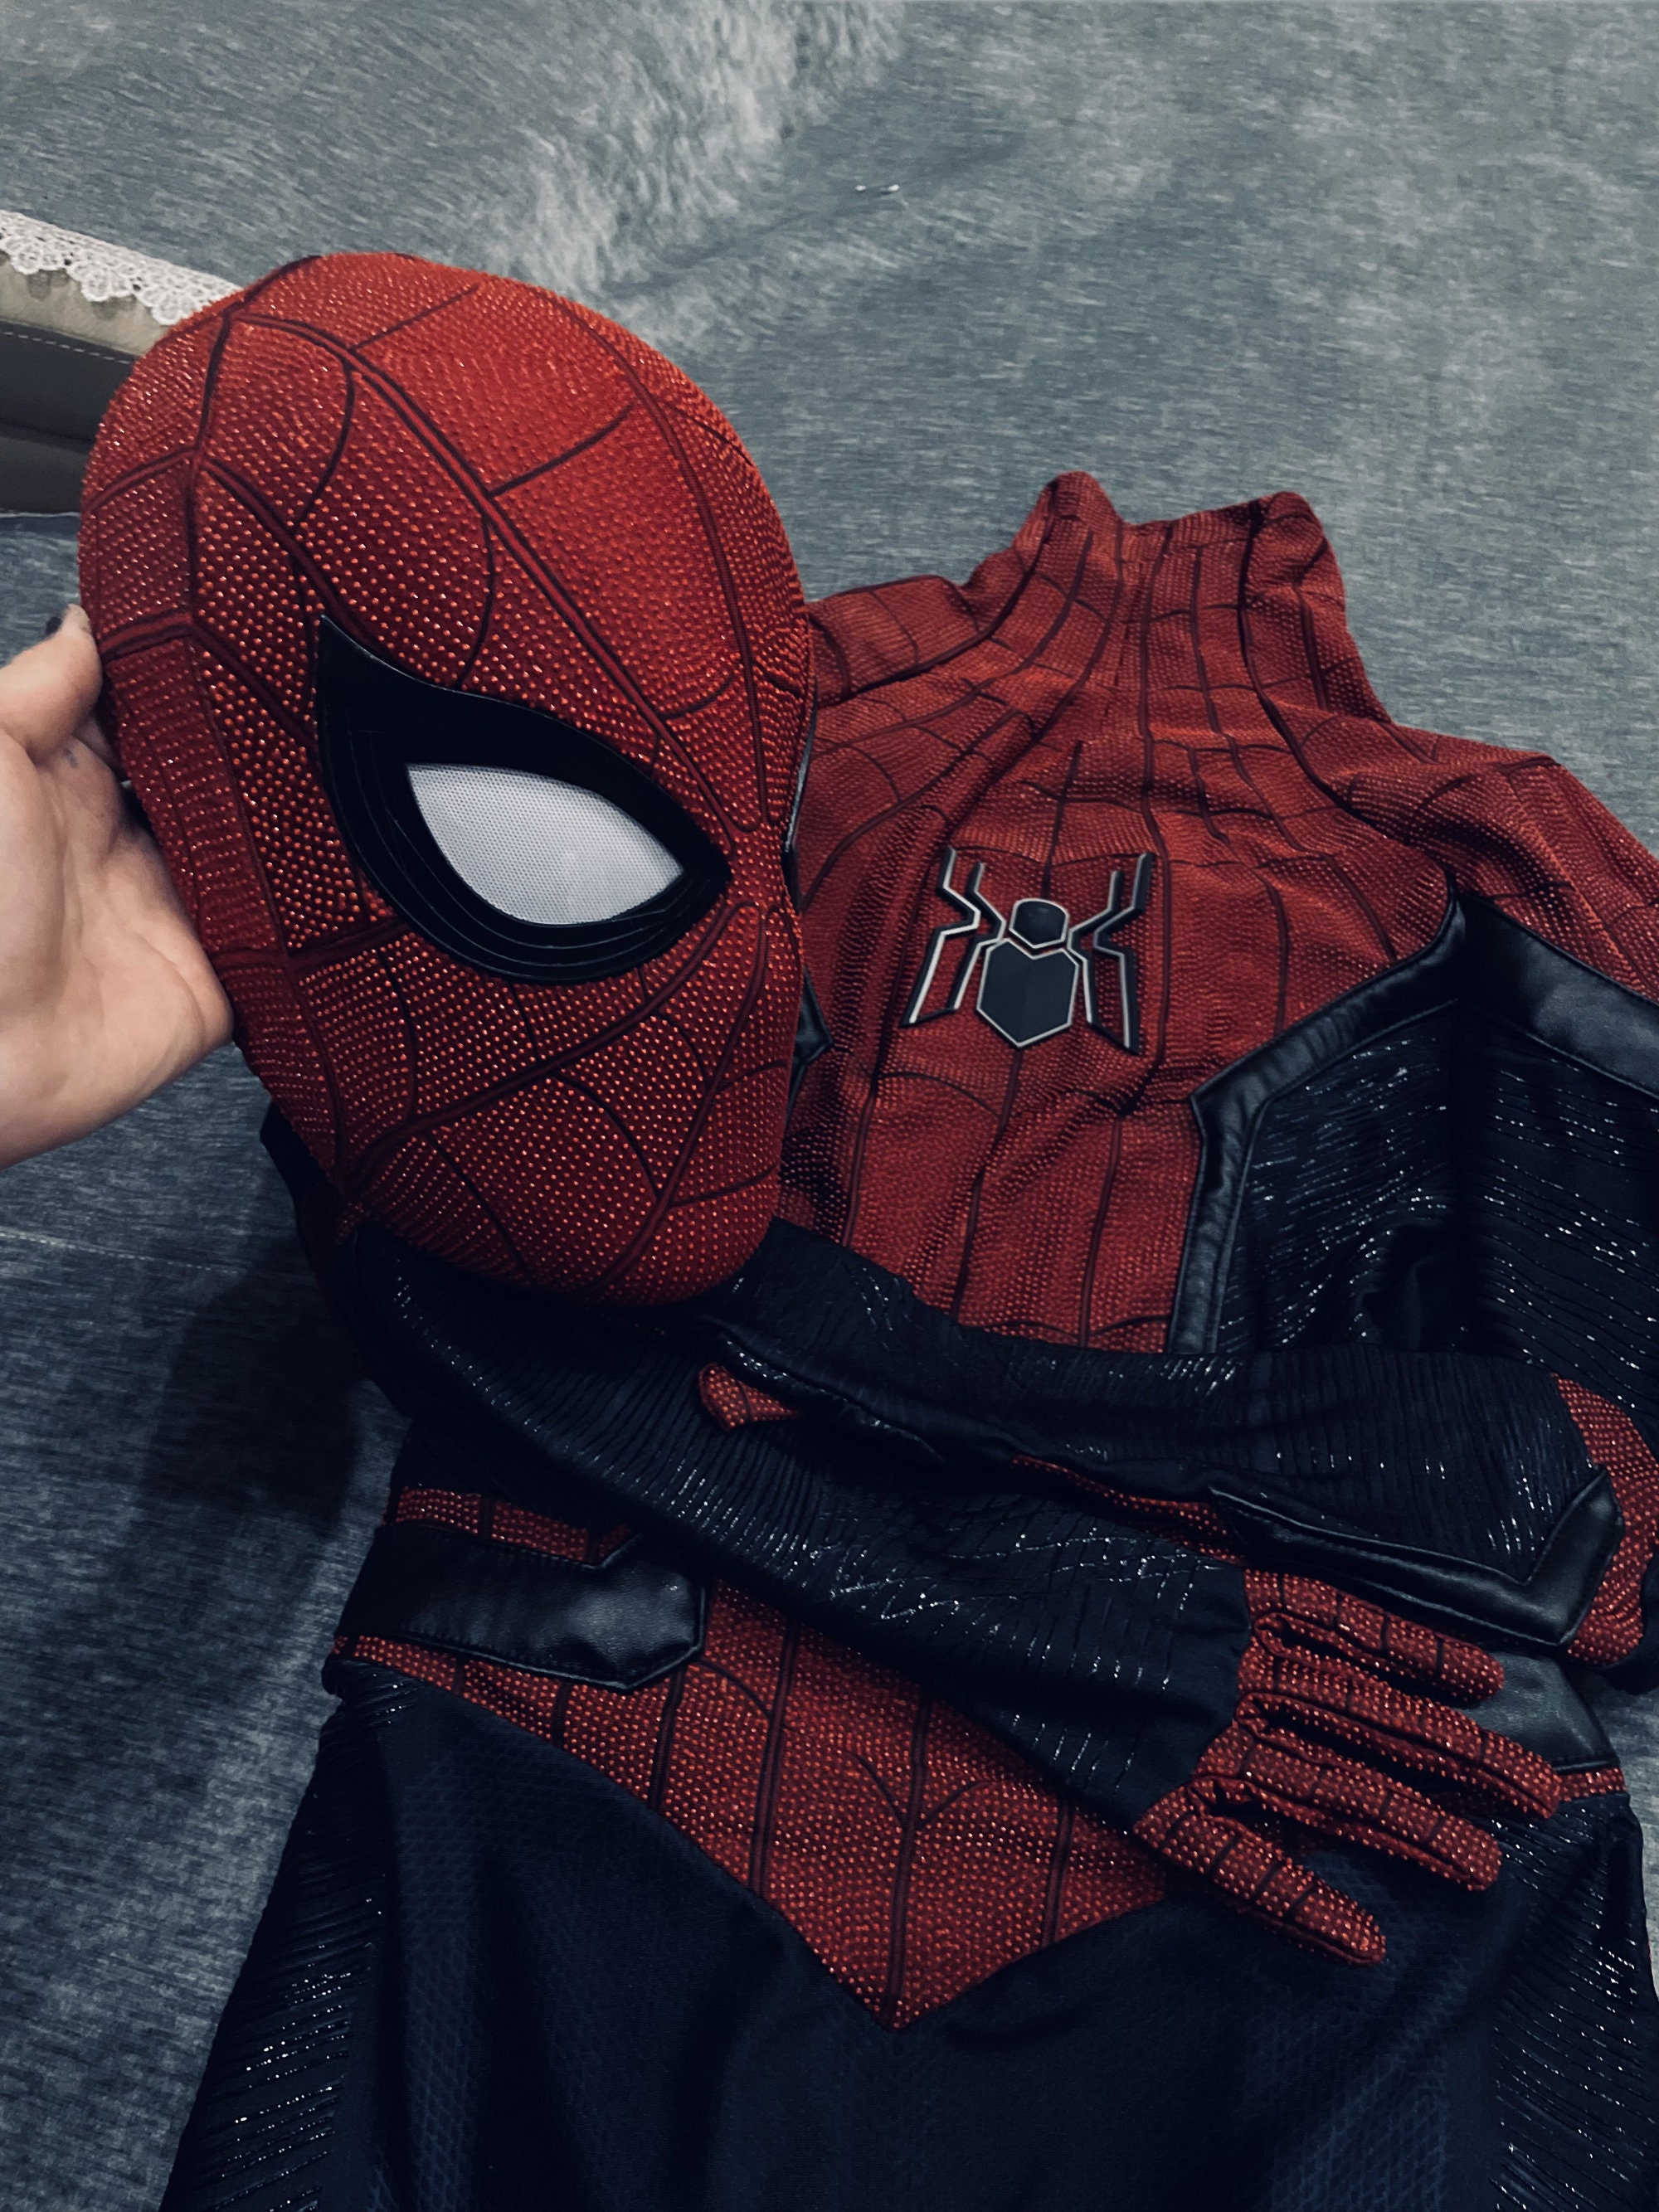 Spiderman Mask Superhero Miles Morales Peter Parker Spider Man Cosplay  Masques Casque d'araignée Halloween Costume Accessoires pour adultes